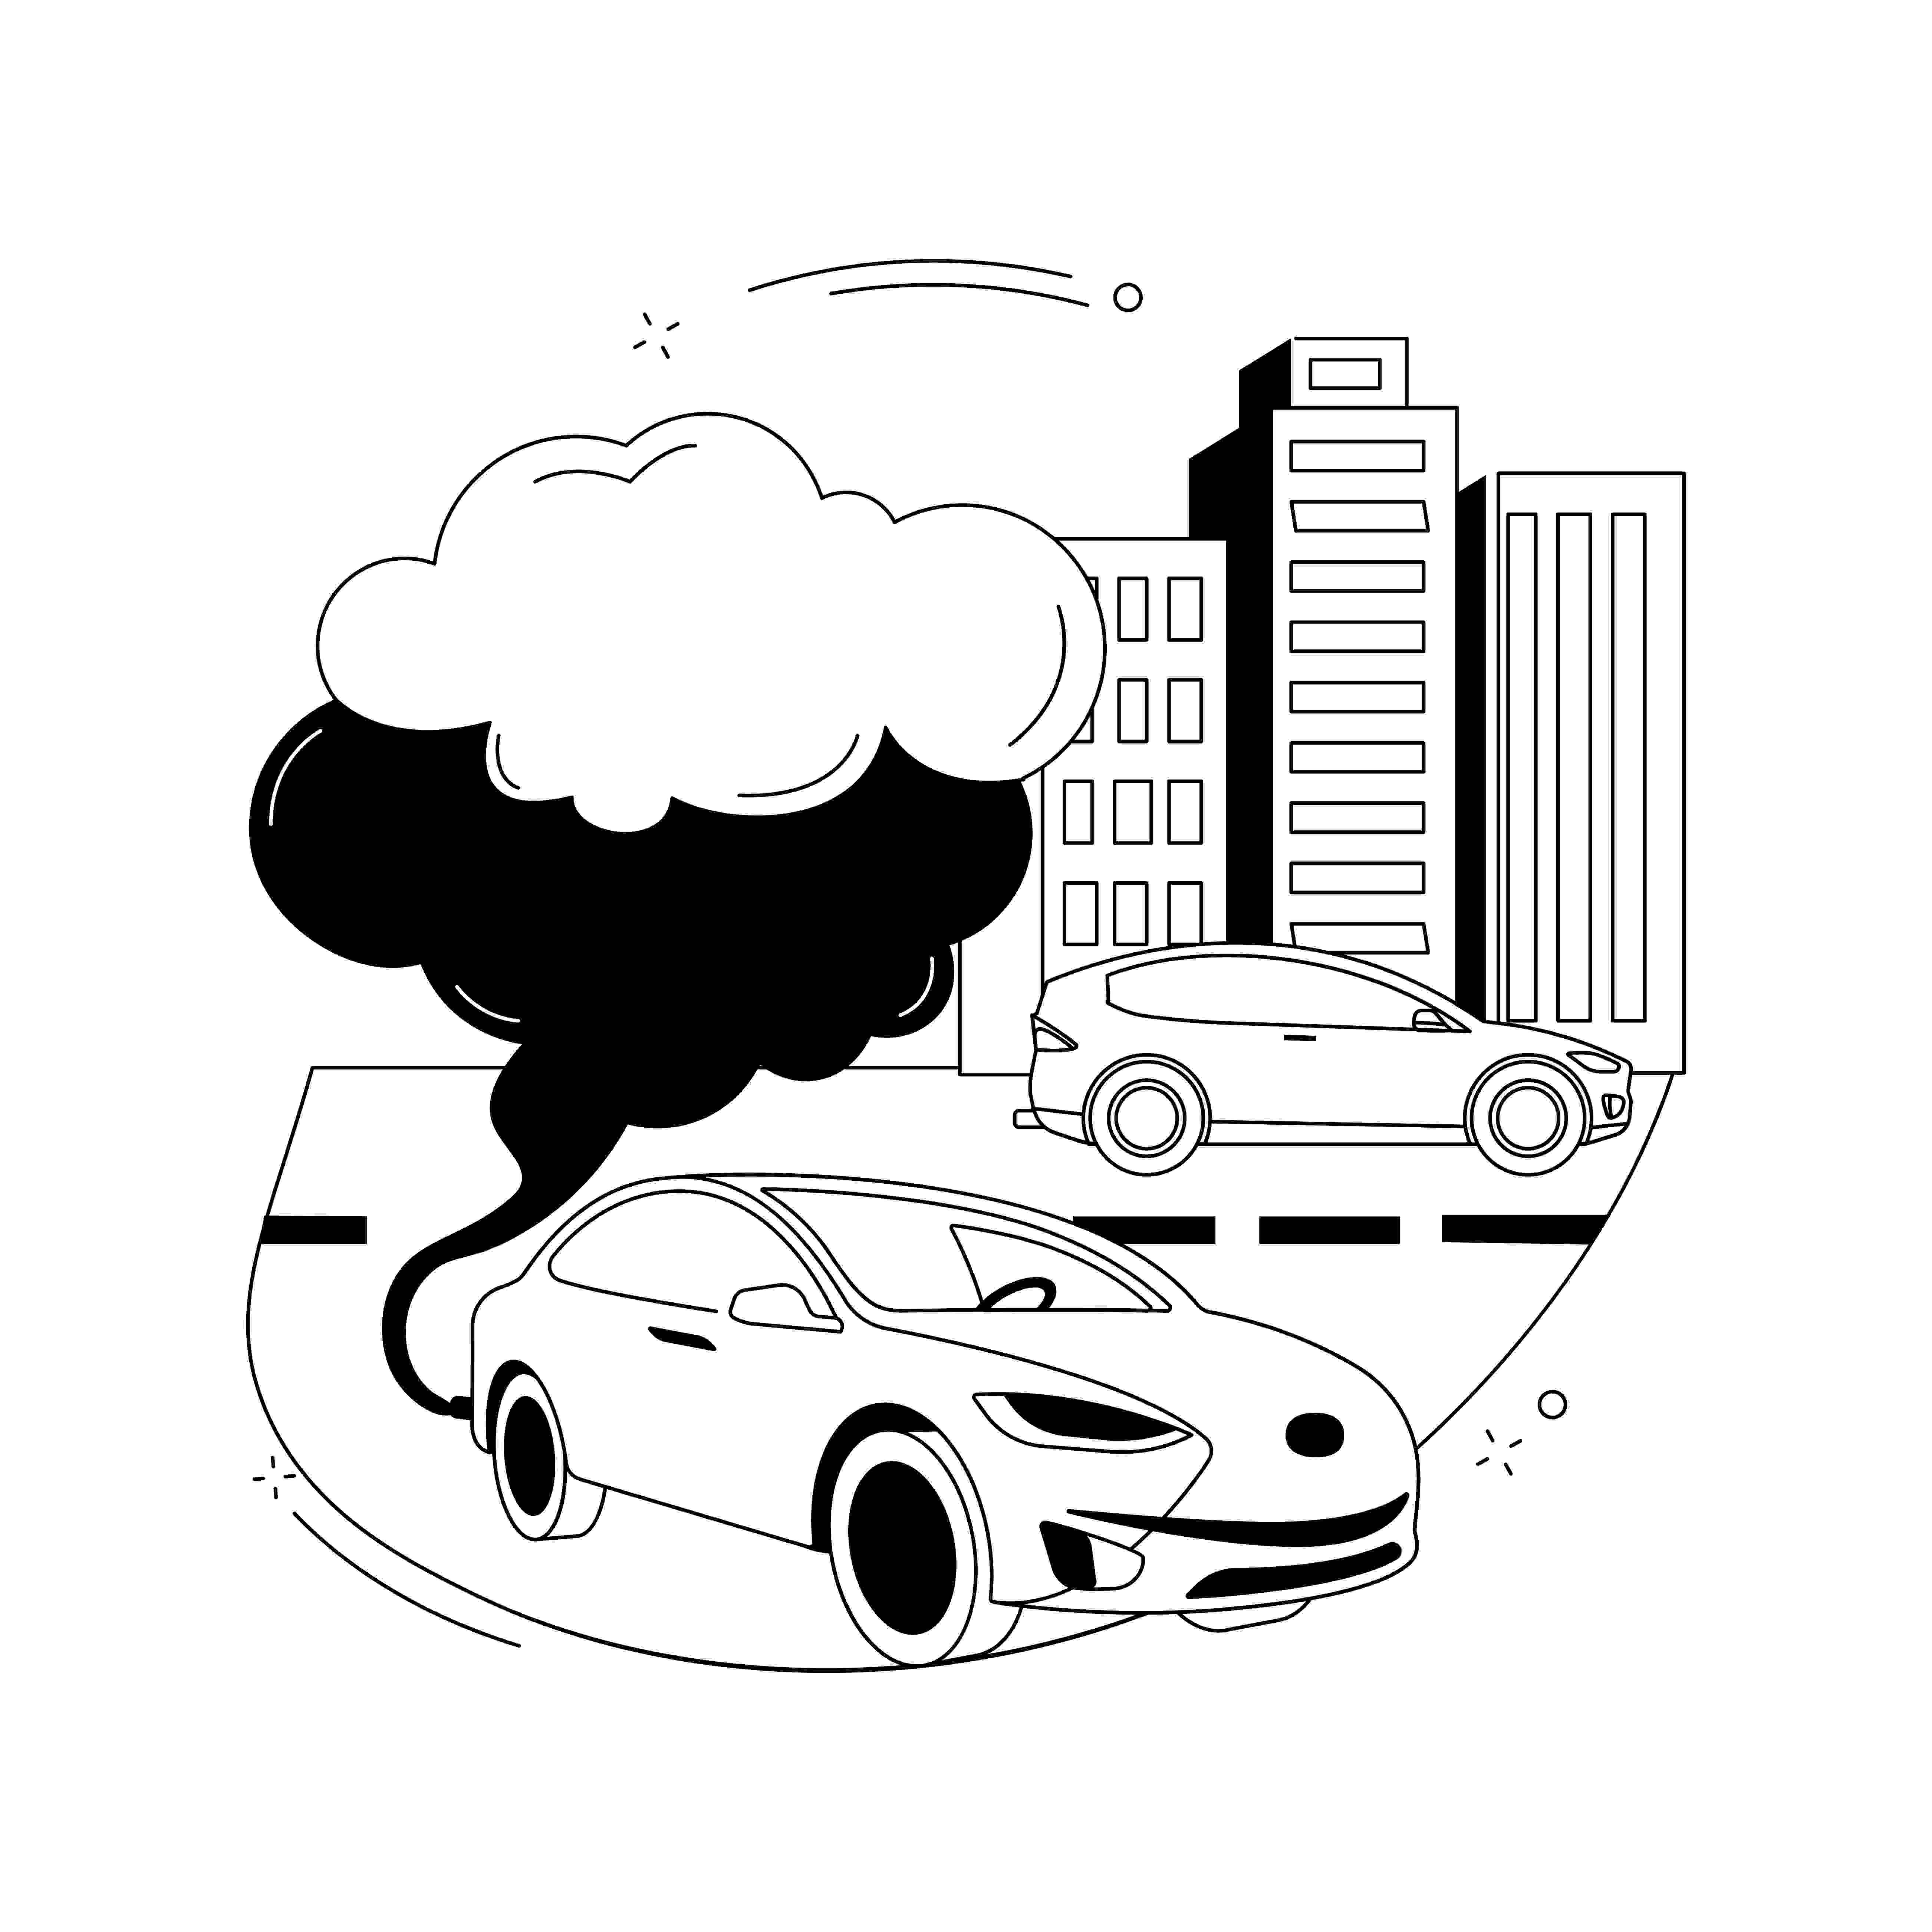 В настоящее время все больше людей обращают внимание на экологические проблемы, и автомобильный сектор не является исключением.